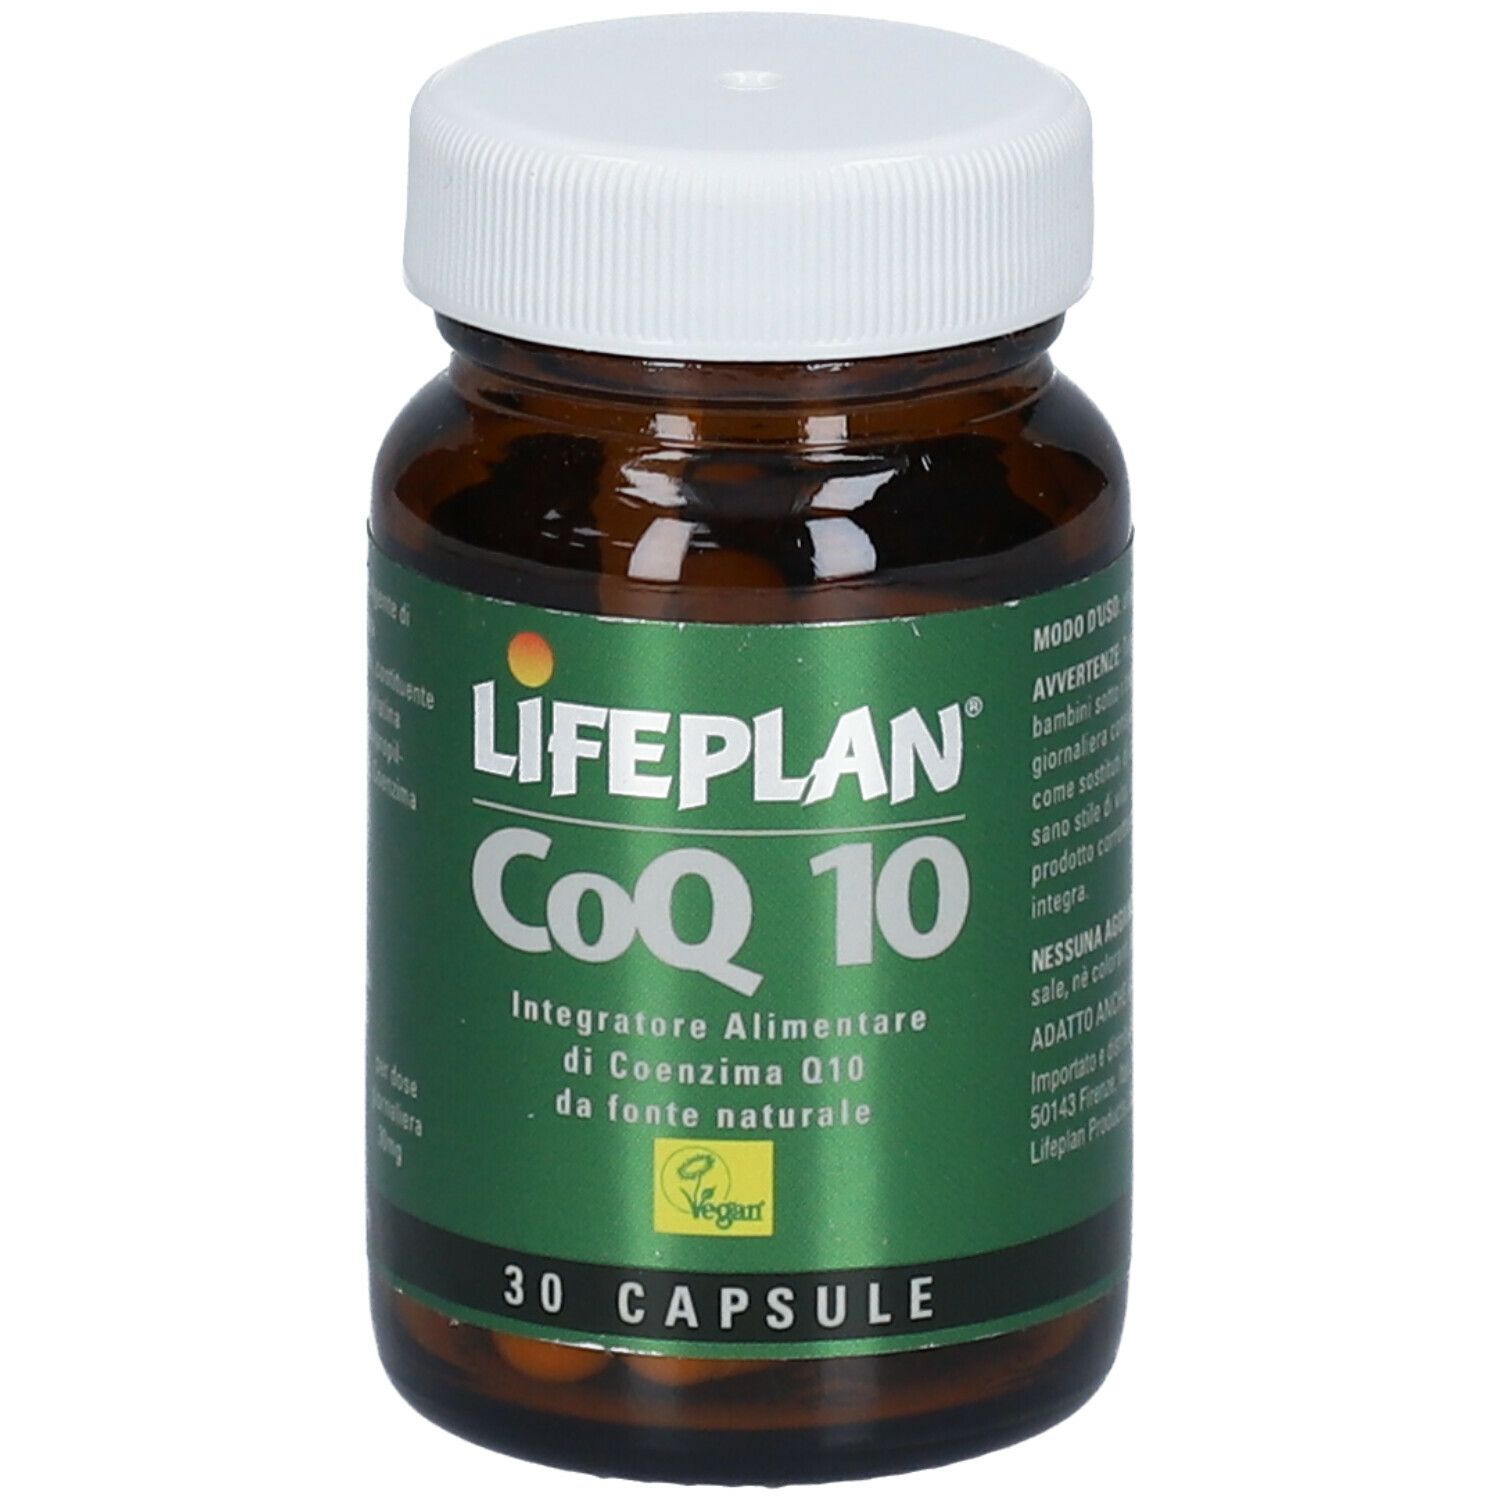 LIFEPLAN® CoQ10